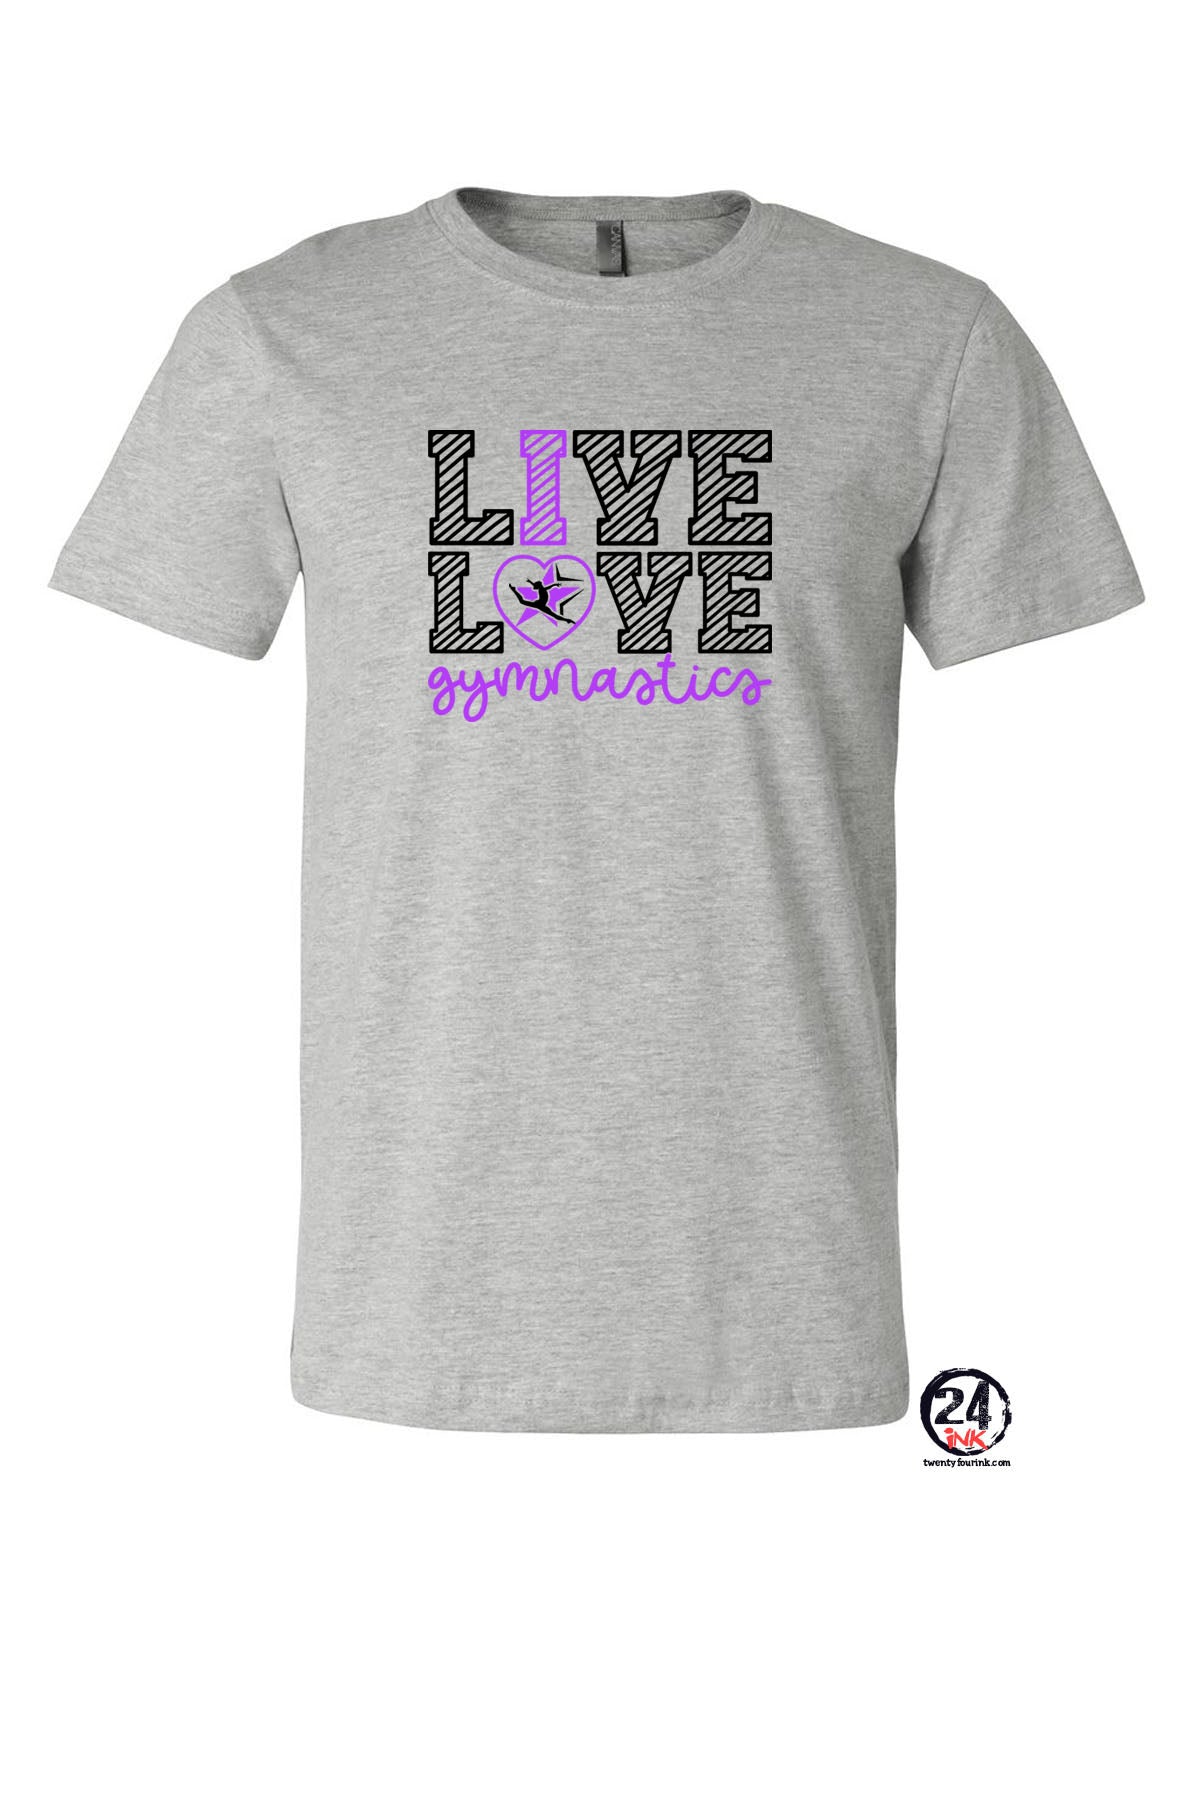 Live Love Zodiacs T-Shirt